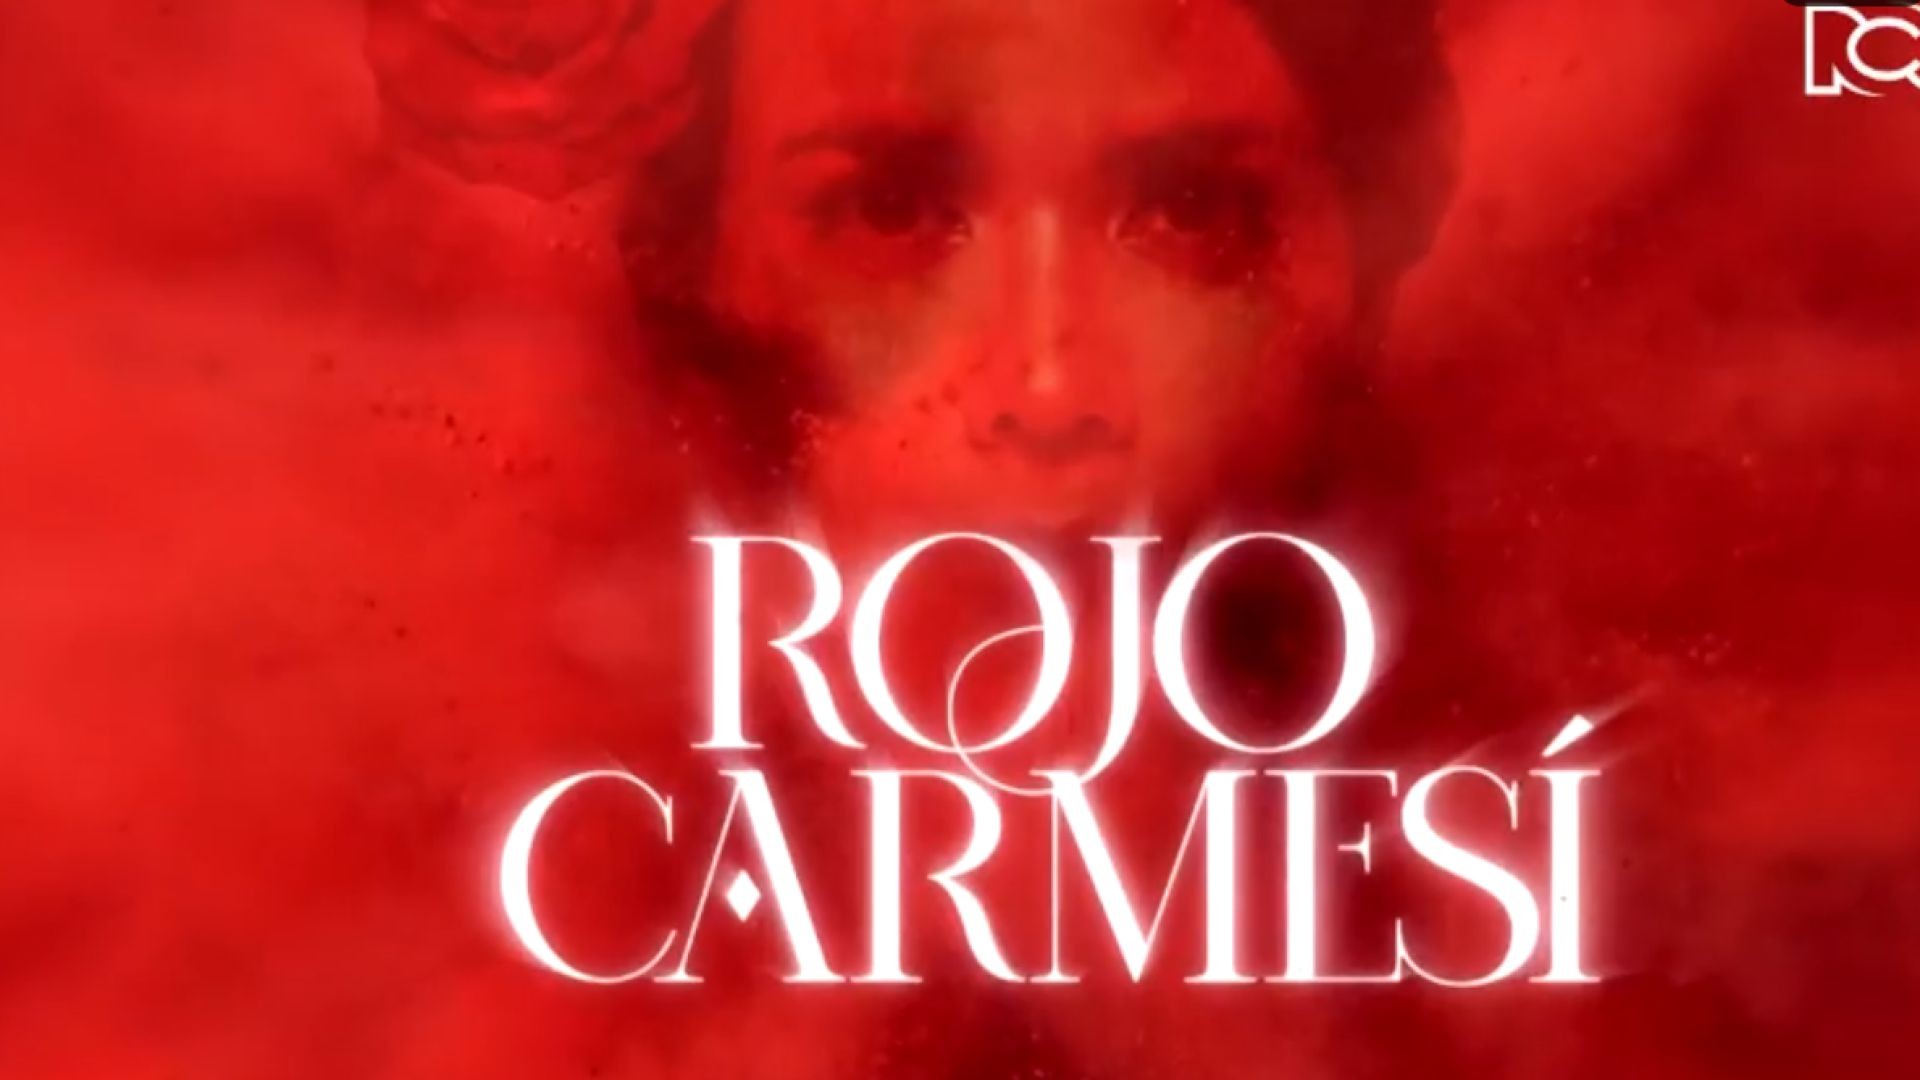 Rojo Carmesí Capitulo 5 Completo - Rojo Carmesí telenovela